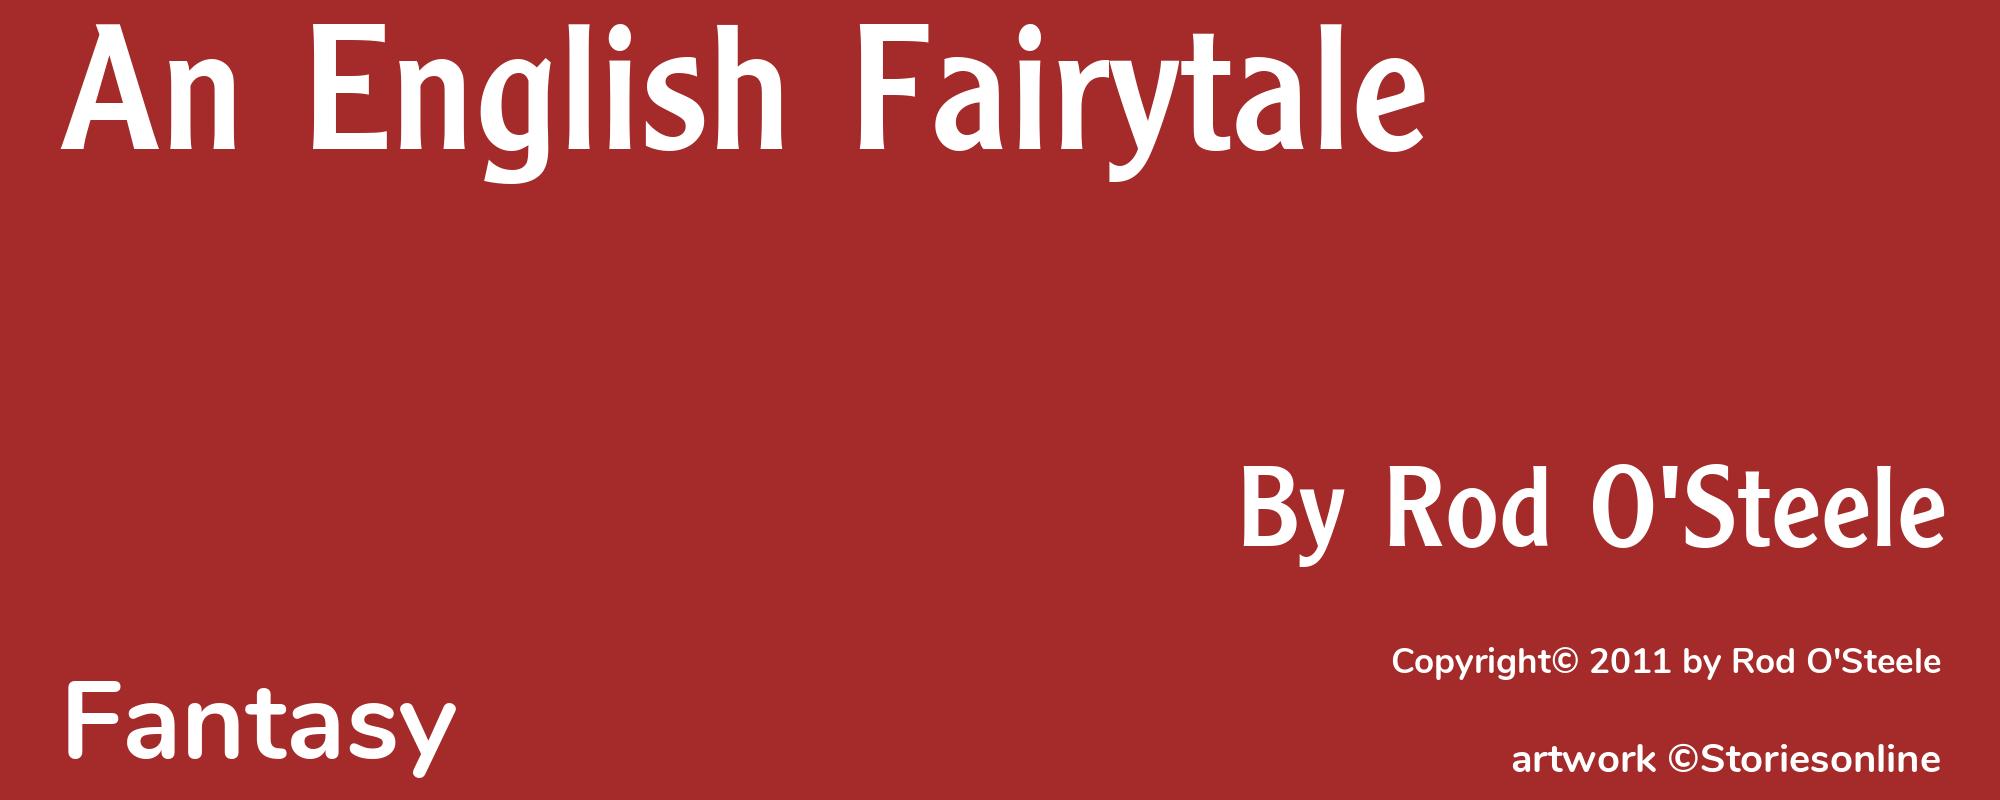 An English Fairytale - Cover